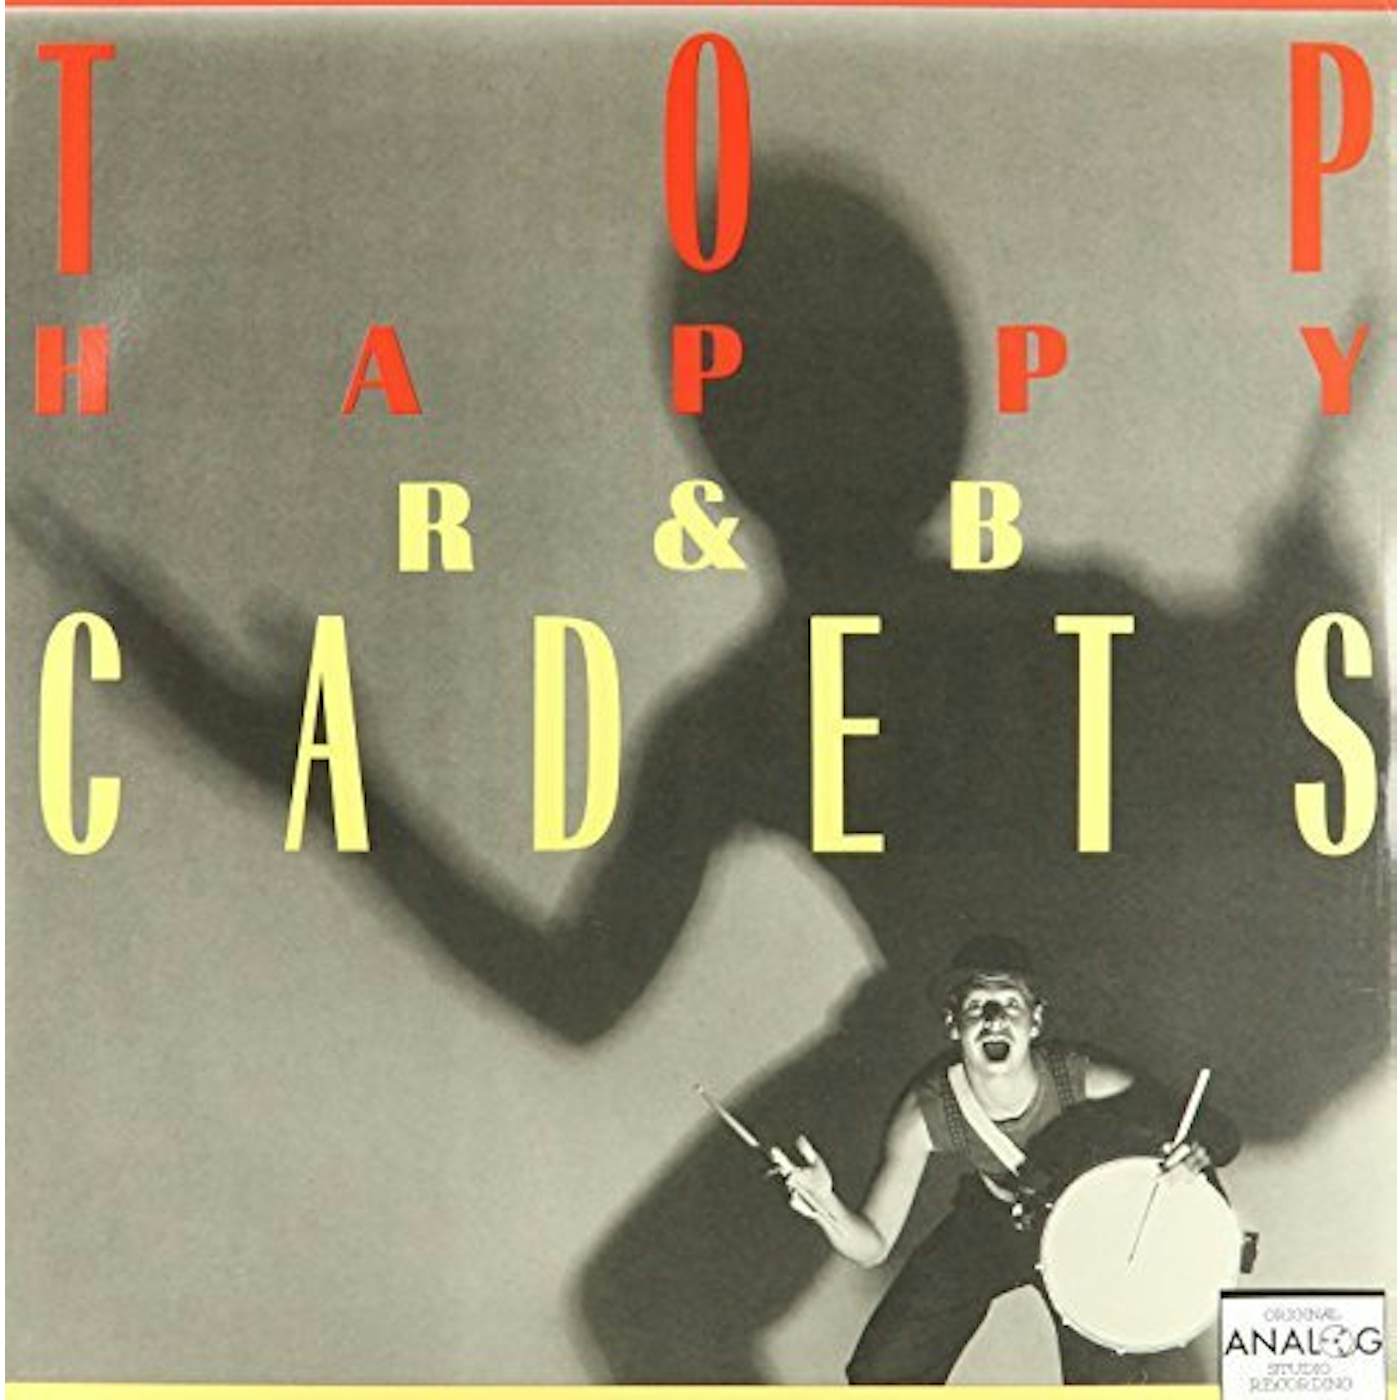 R&B CADETS Top Happy Vinyl Record